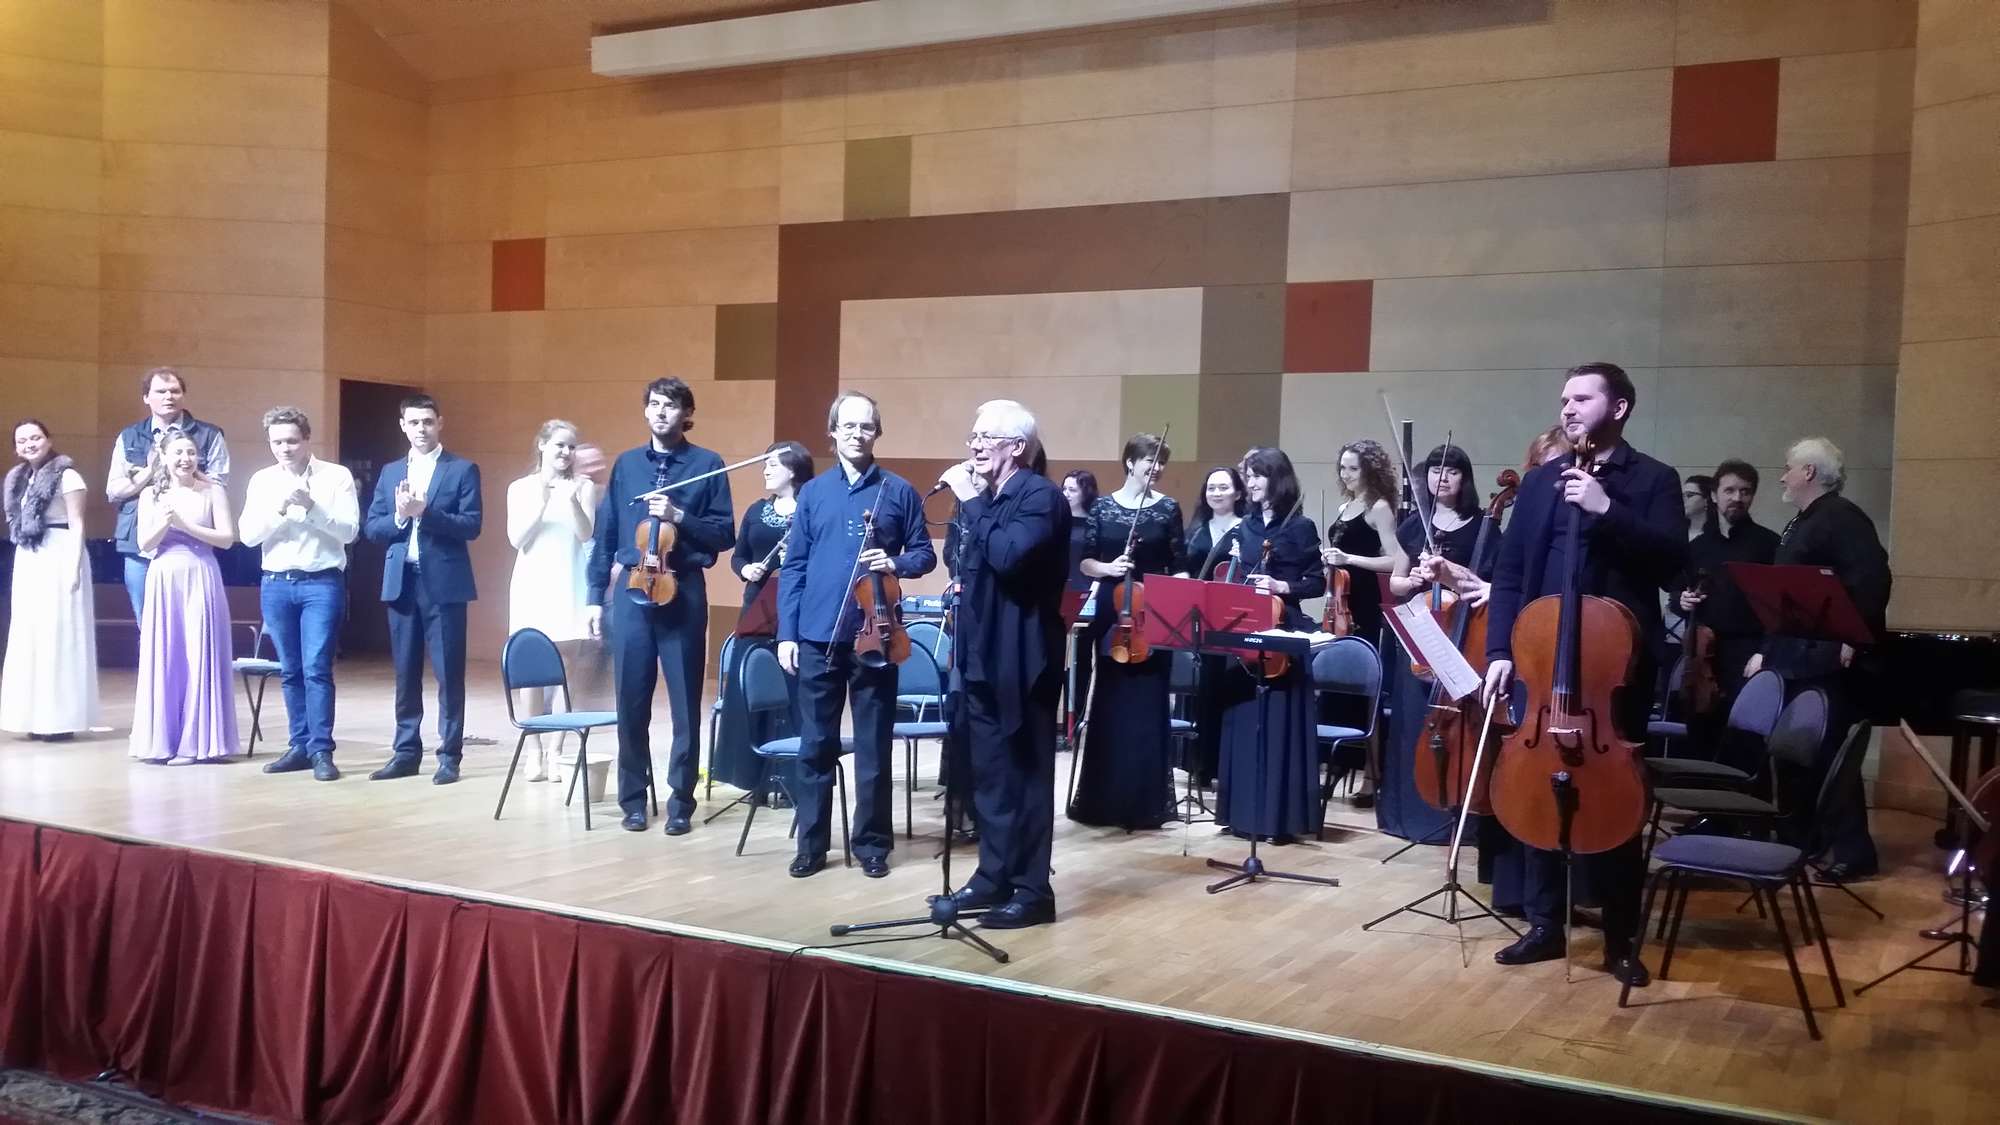 Оркестр «Инструментальная капелла» и солисты АХИ им. Попова исполнили оперу «Бастьен и Бастьенна» Моцарта